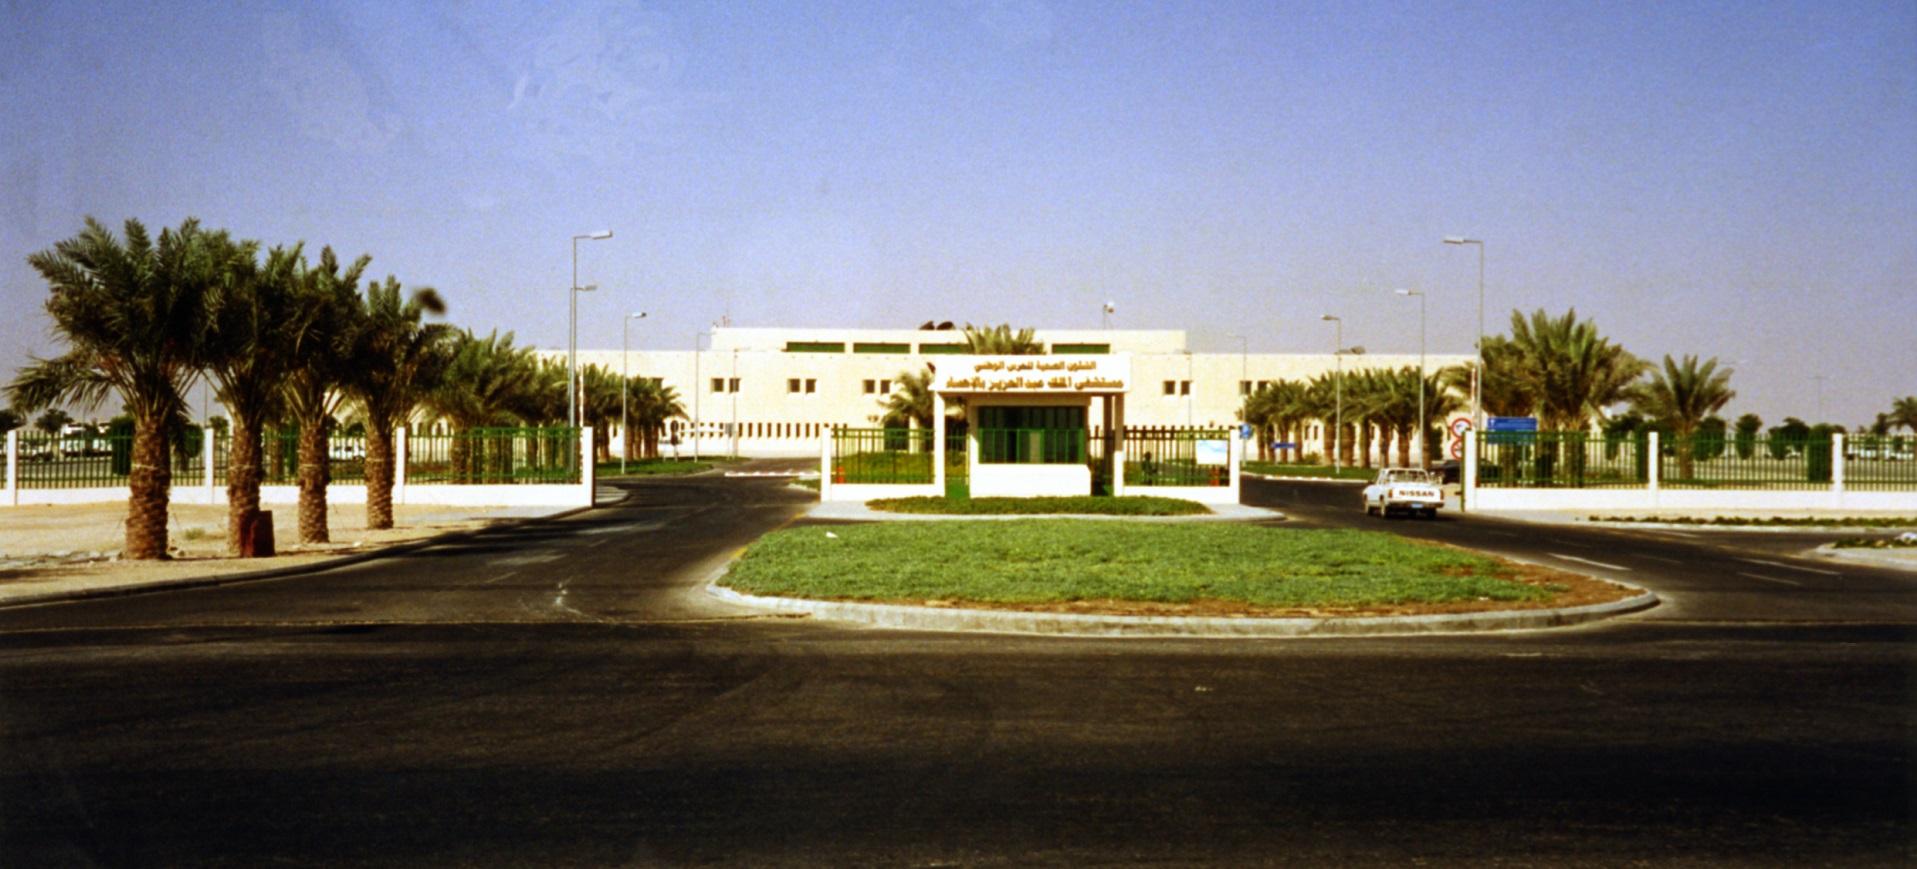 Al Hasa hospital centres